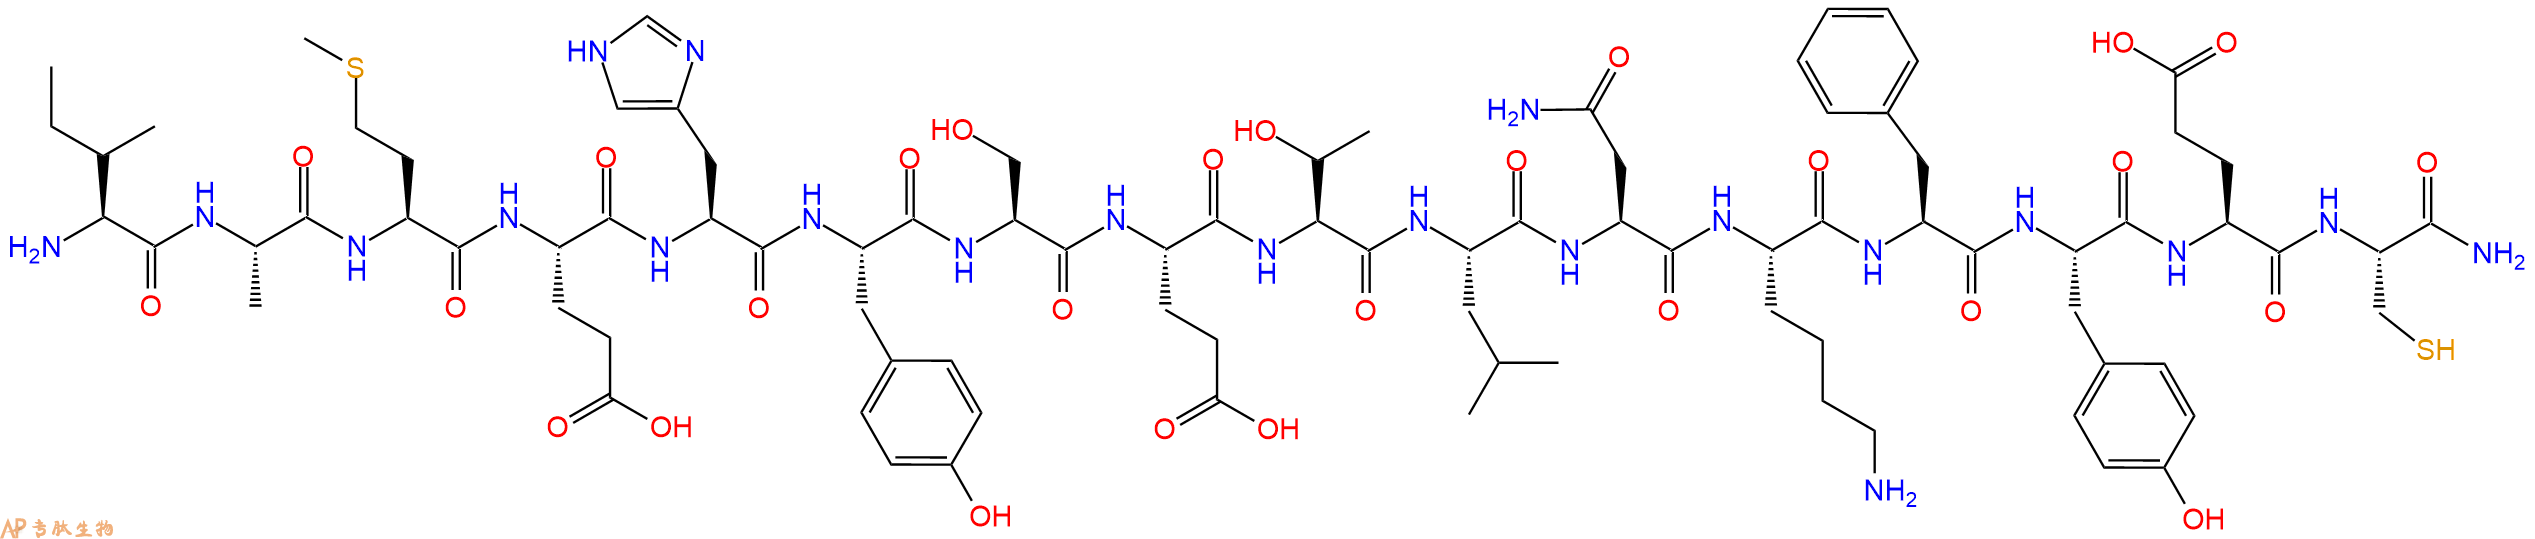 专肽生物产品H2N-Ile-Ala-Met-Glu-His-Tyr-Ser-Glu-Thr-Leu-Asn-Ly